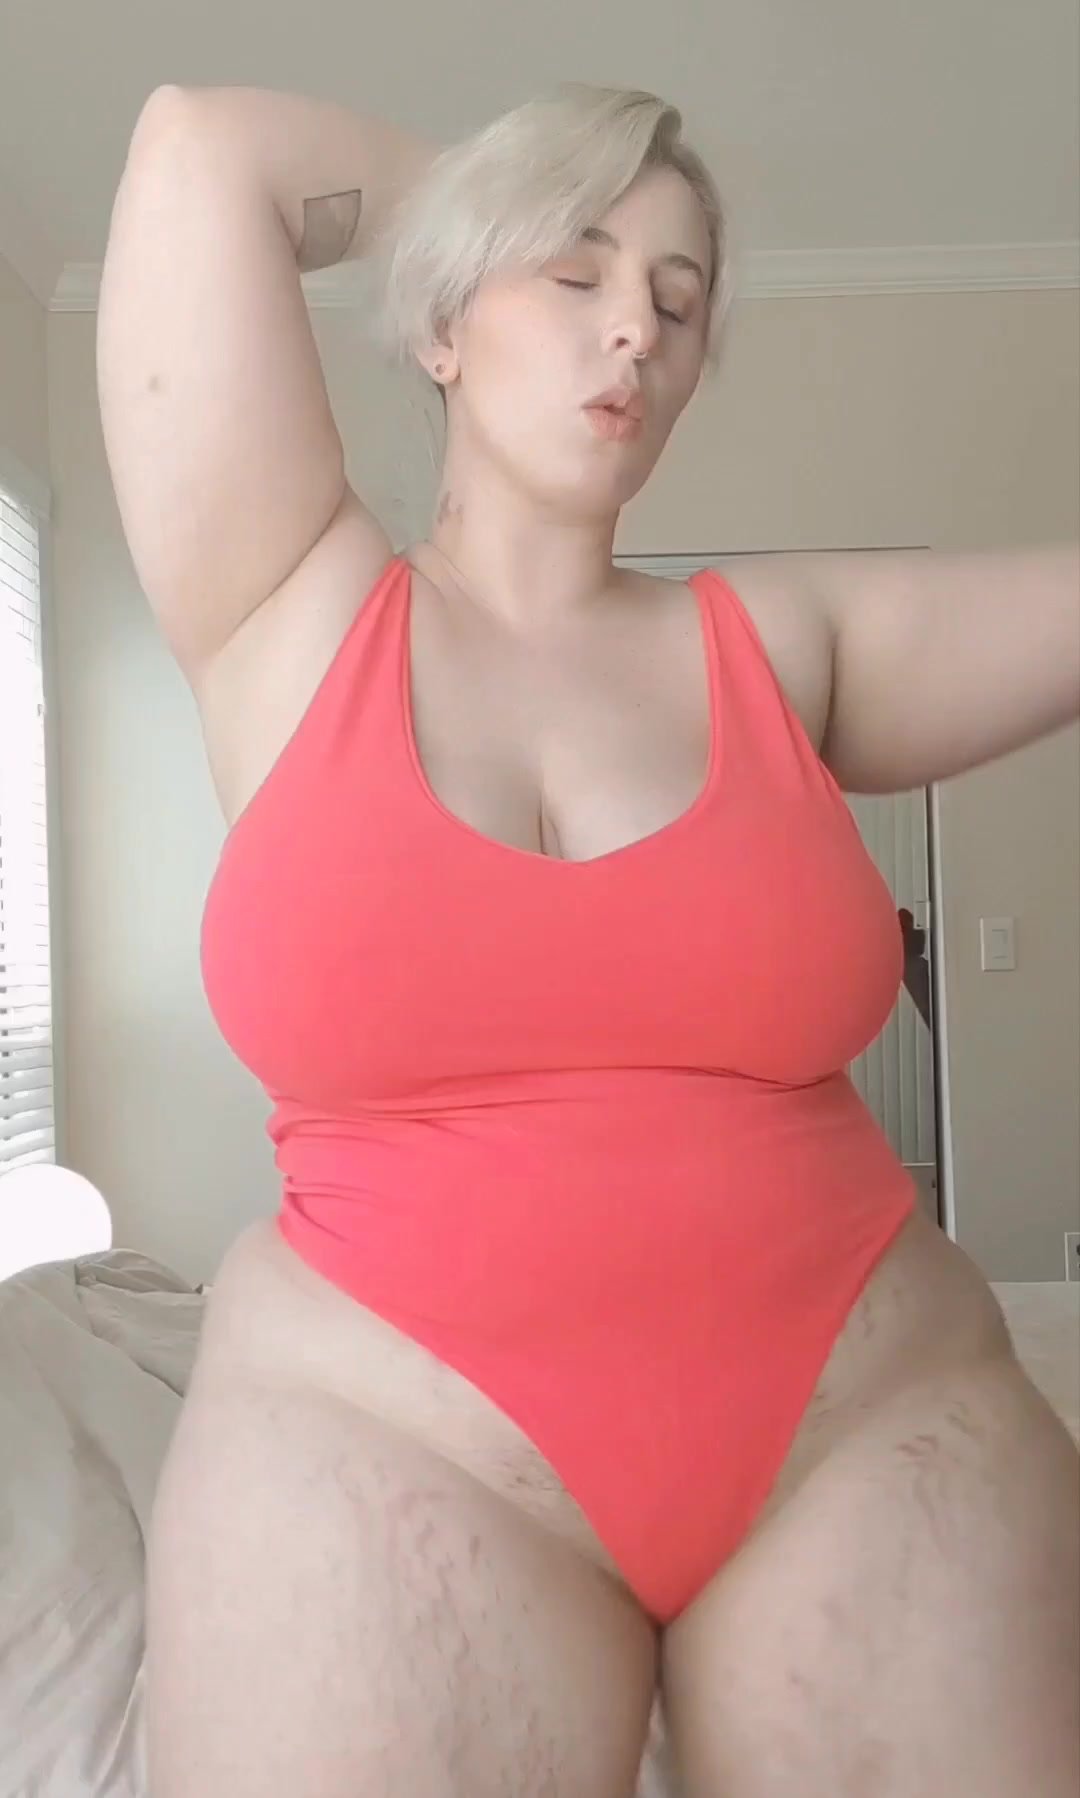 Sexy chubby slut - video 2 - ThisVid.com